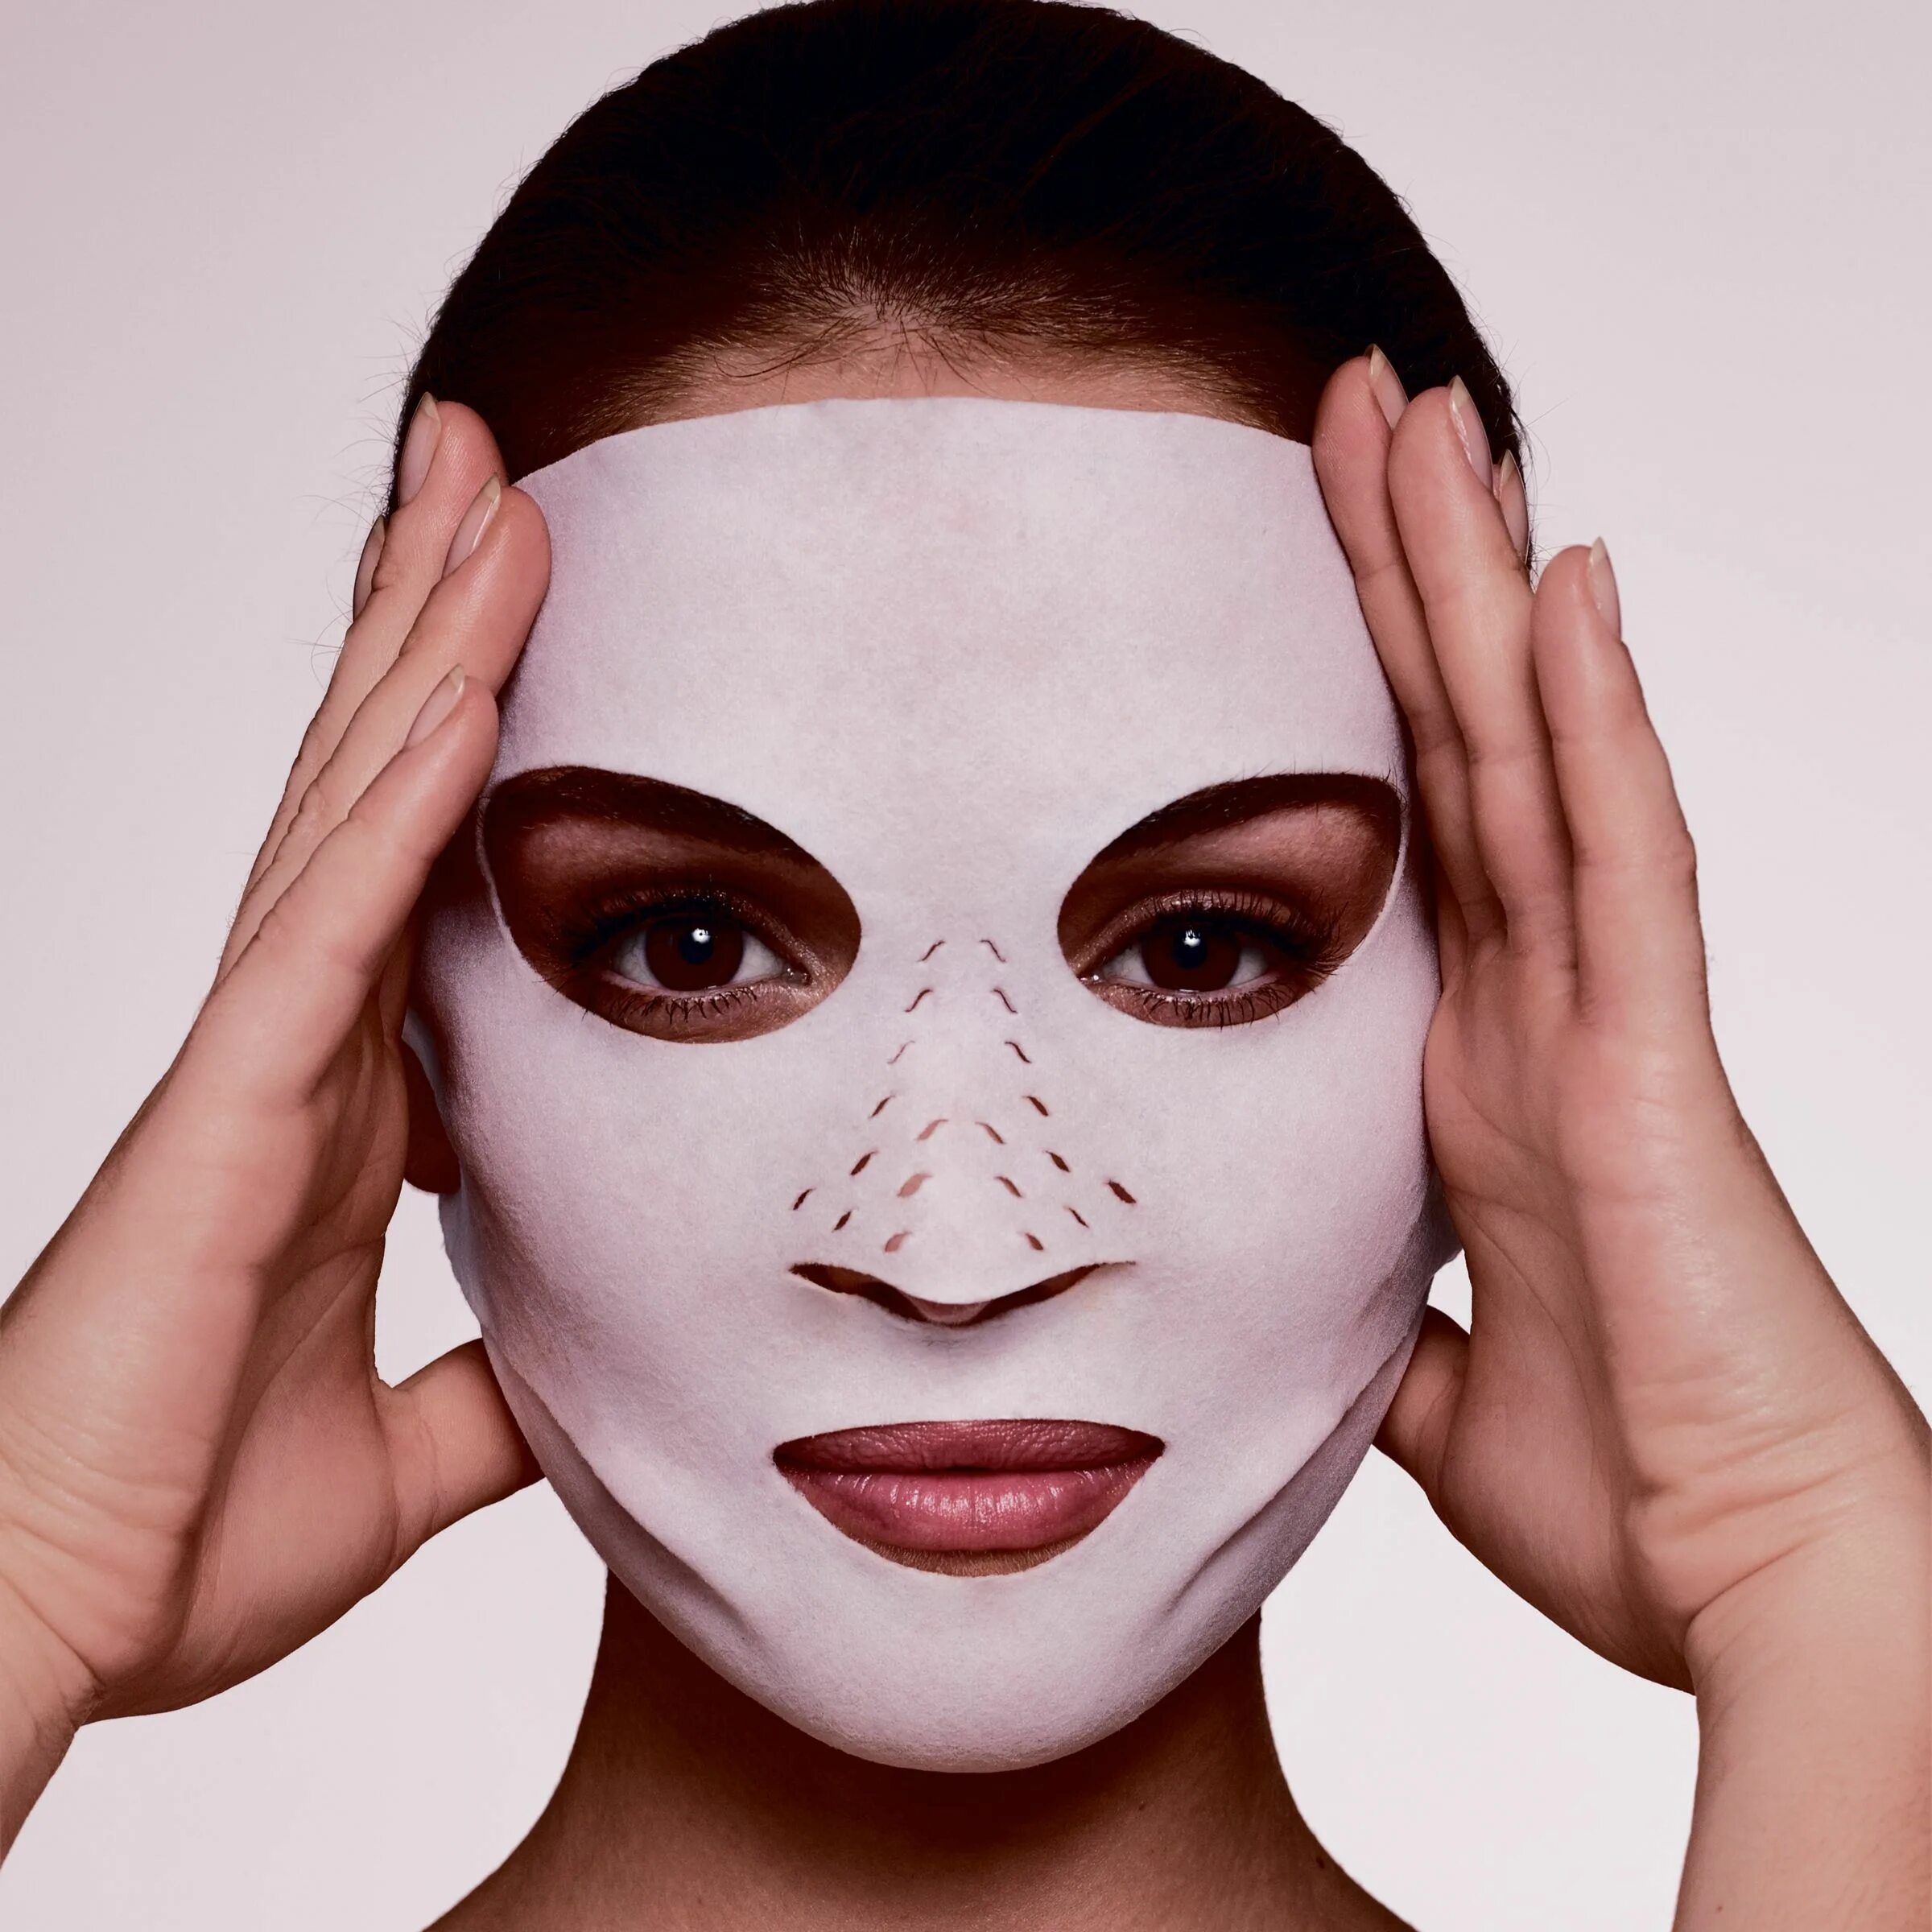 Charlotte Tilbury маска для лица instant Magic Dry Sheet. Девушка с маской на лице. Маска женского лица. Макияж маска. Большие маски для лица